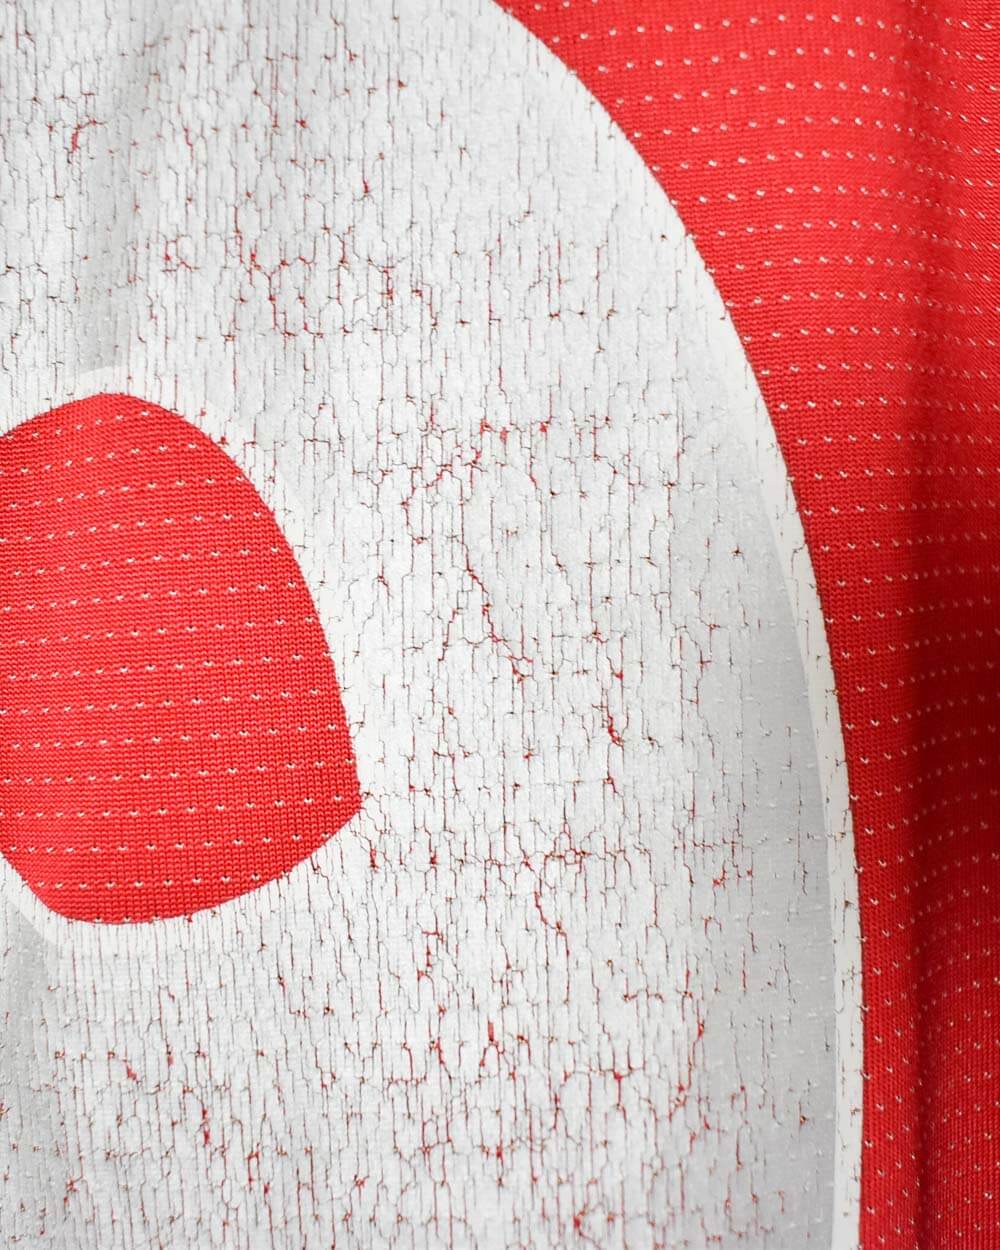 Red Umbro 2004/06 England Away Shirt - Medium